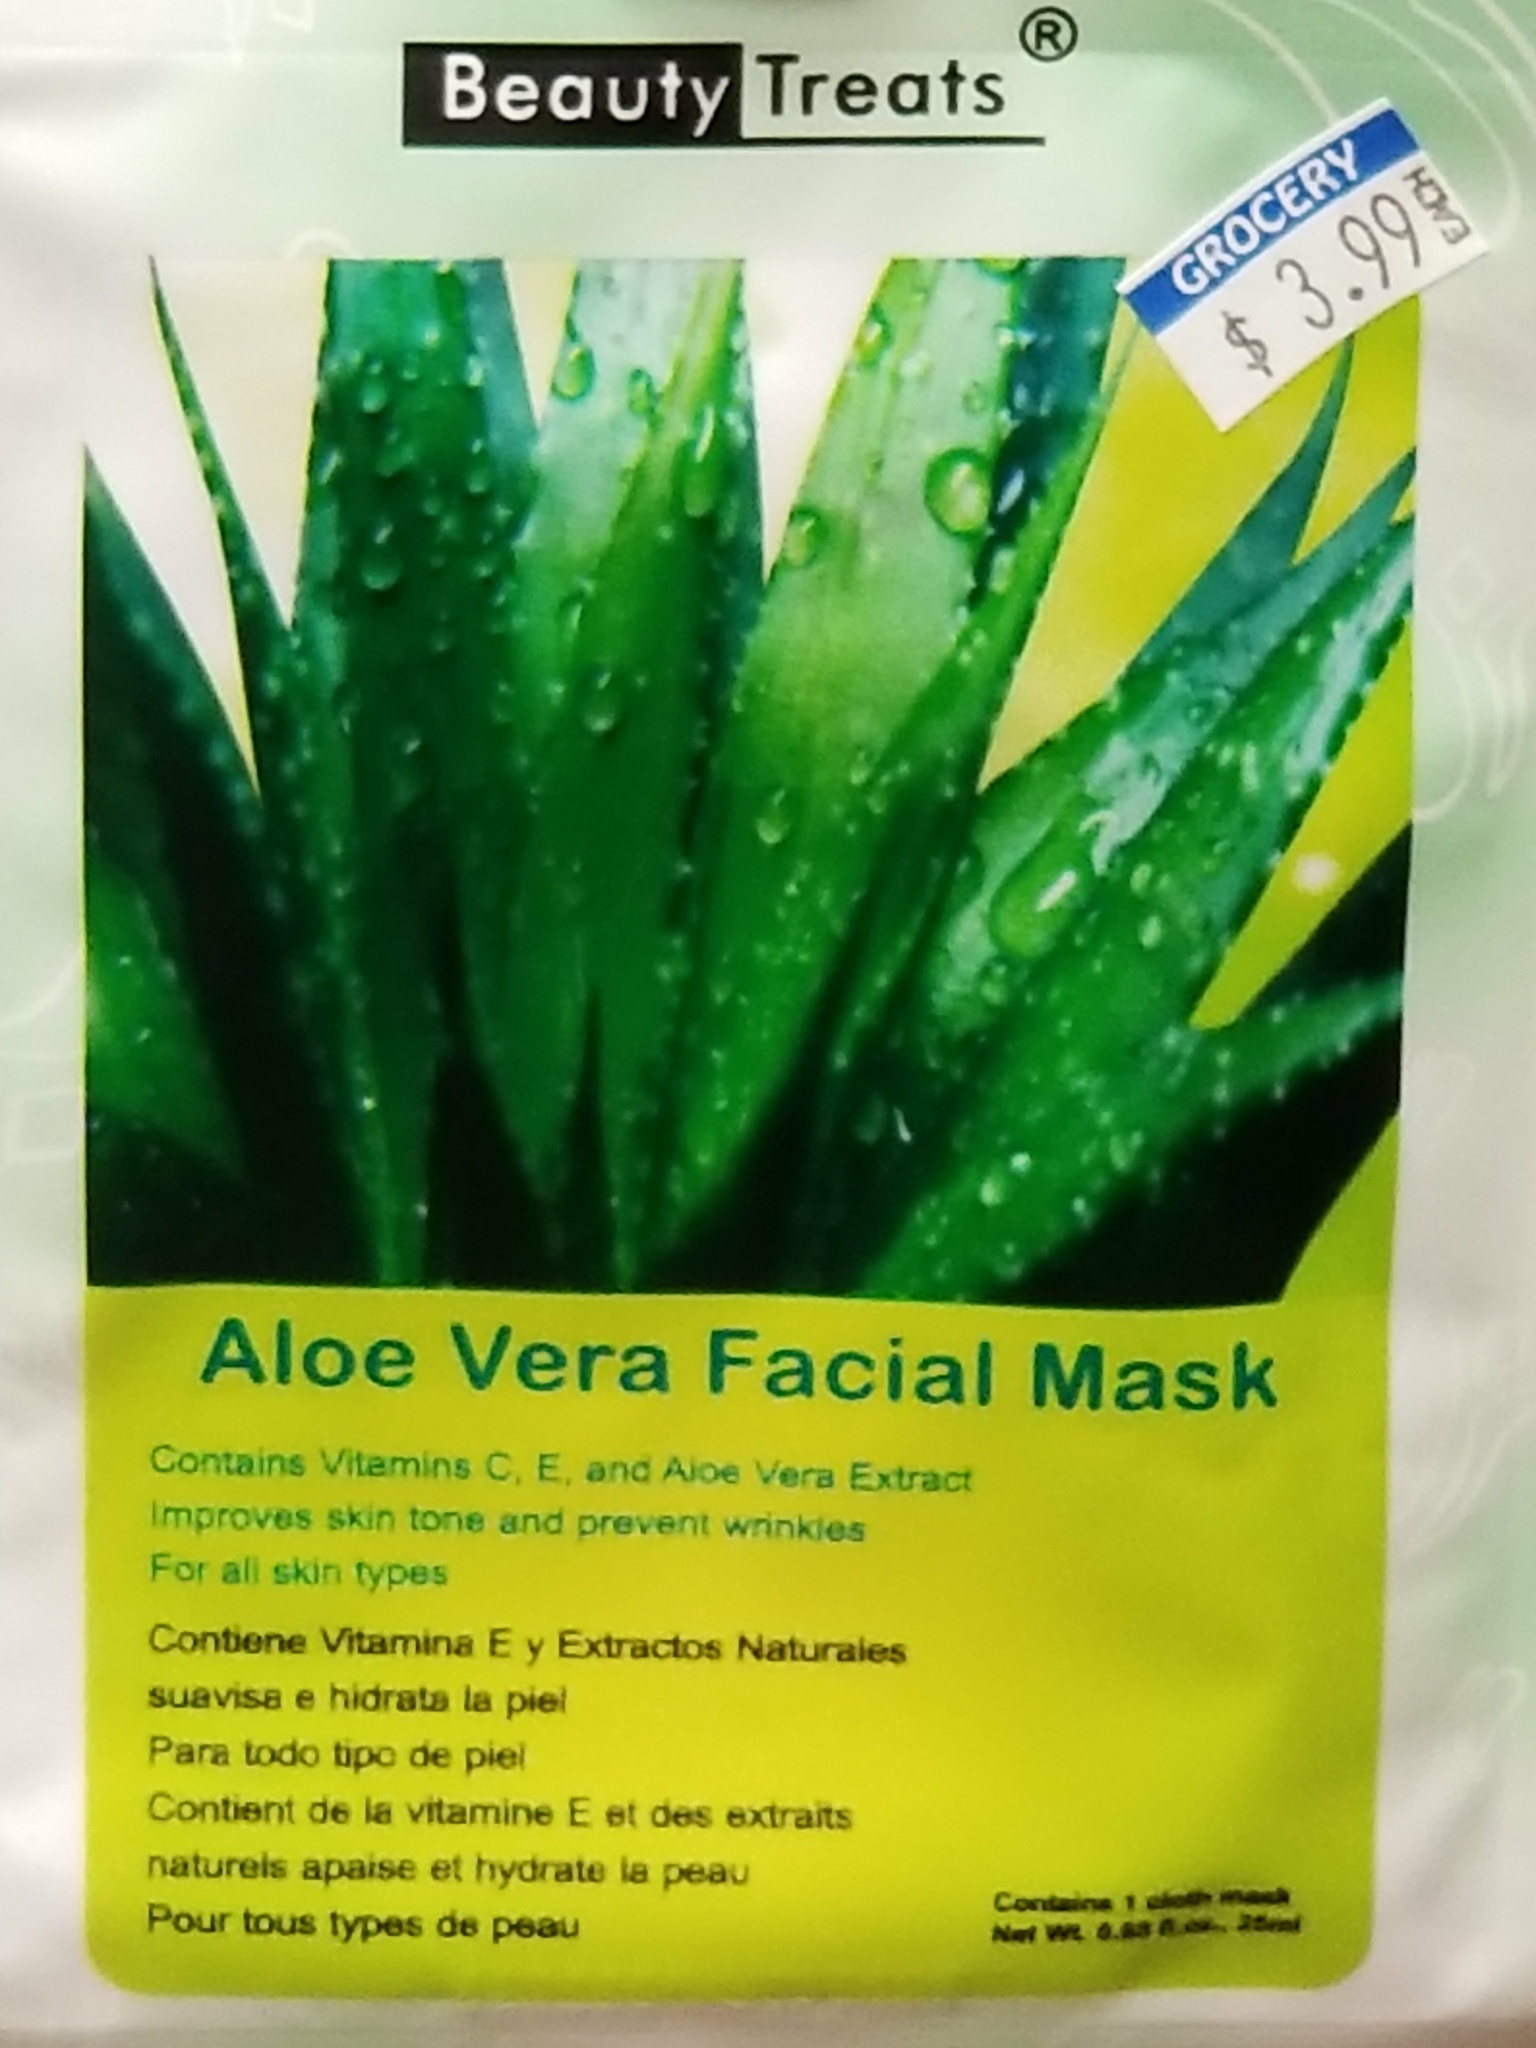 Beauty Treats Aloe Vera Facial Mask